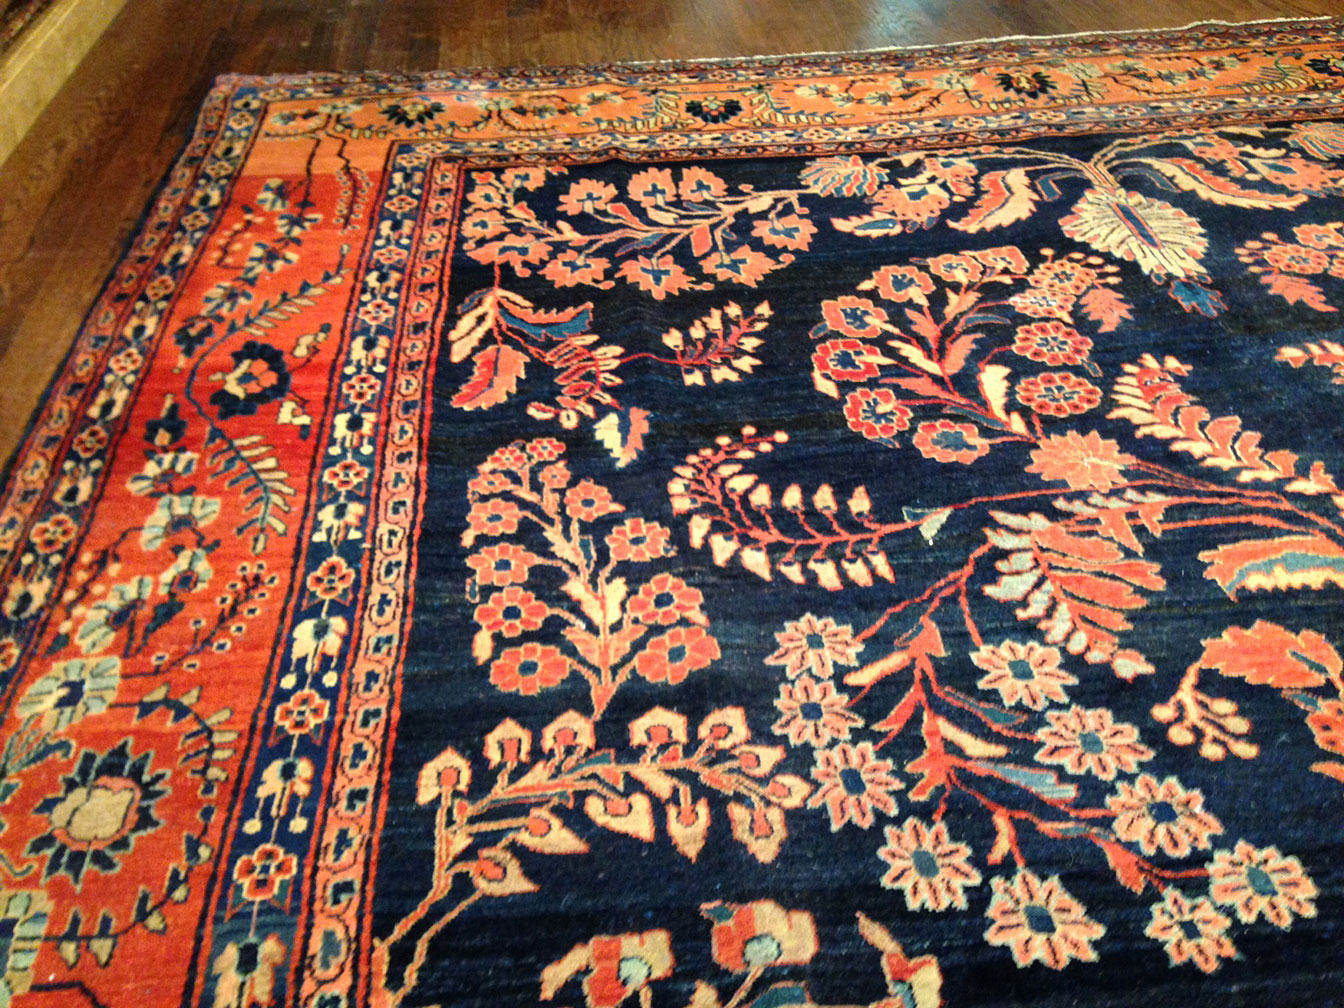 Antique sarouk Carpet - # 8918